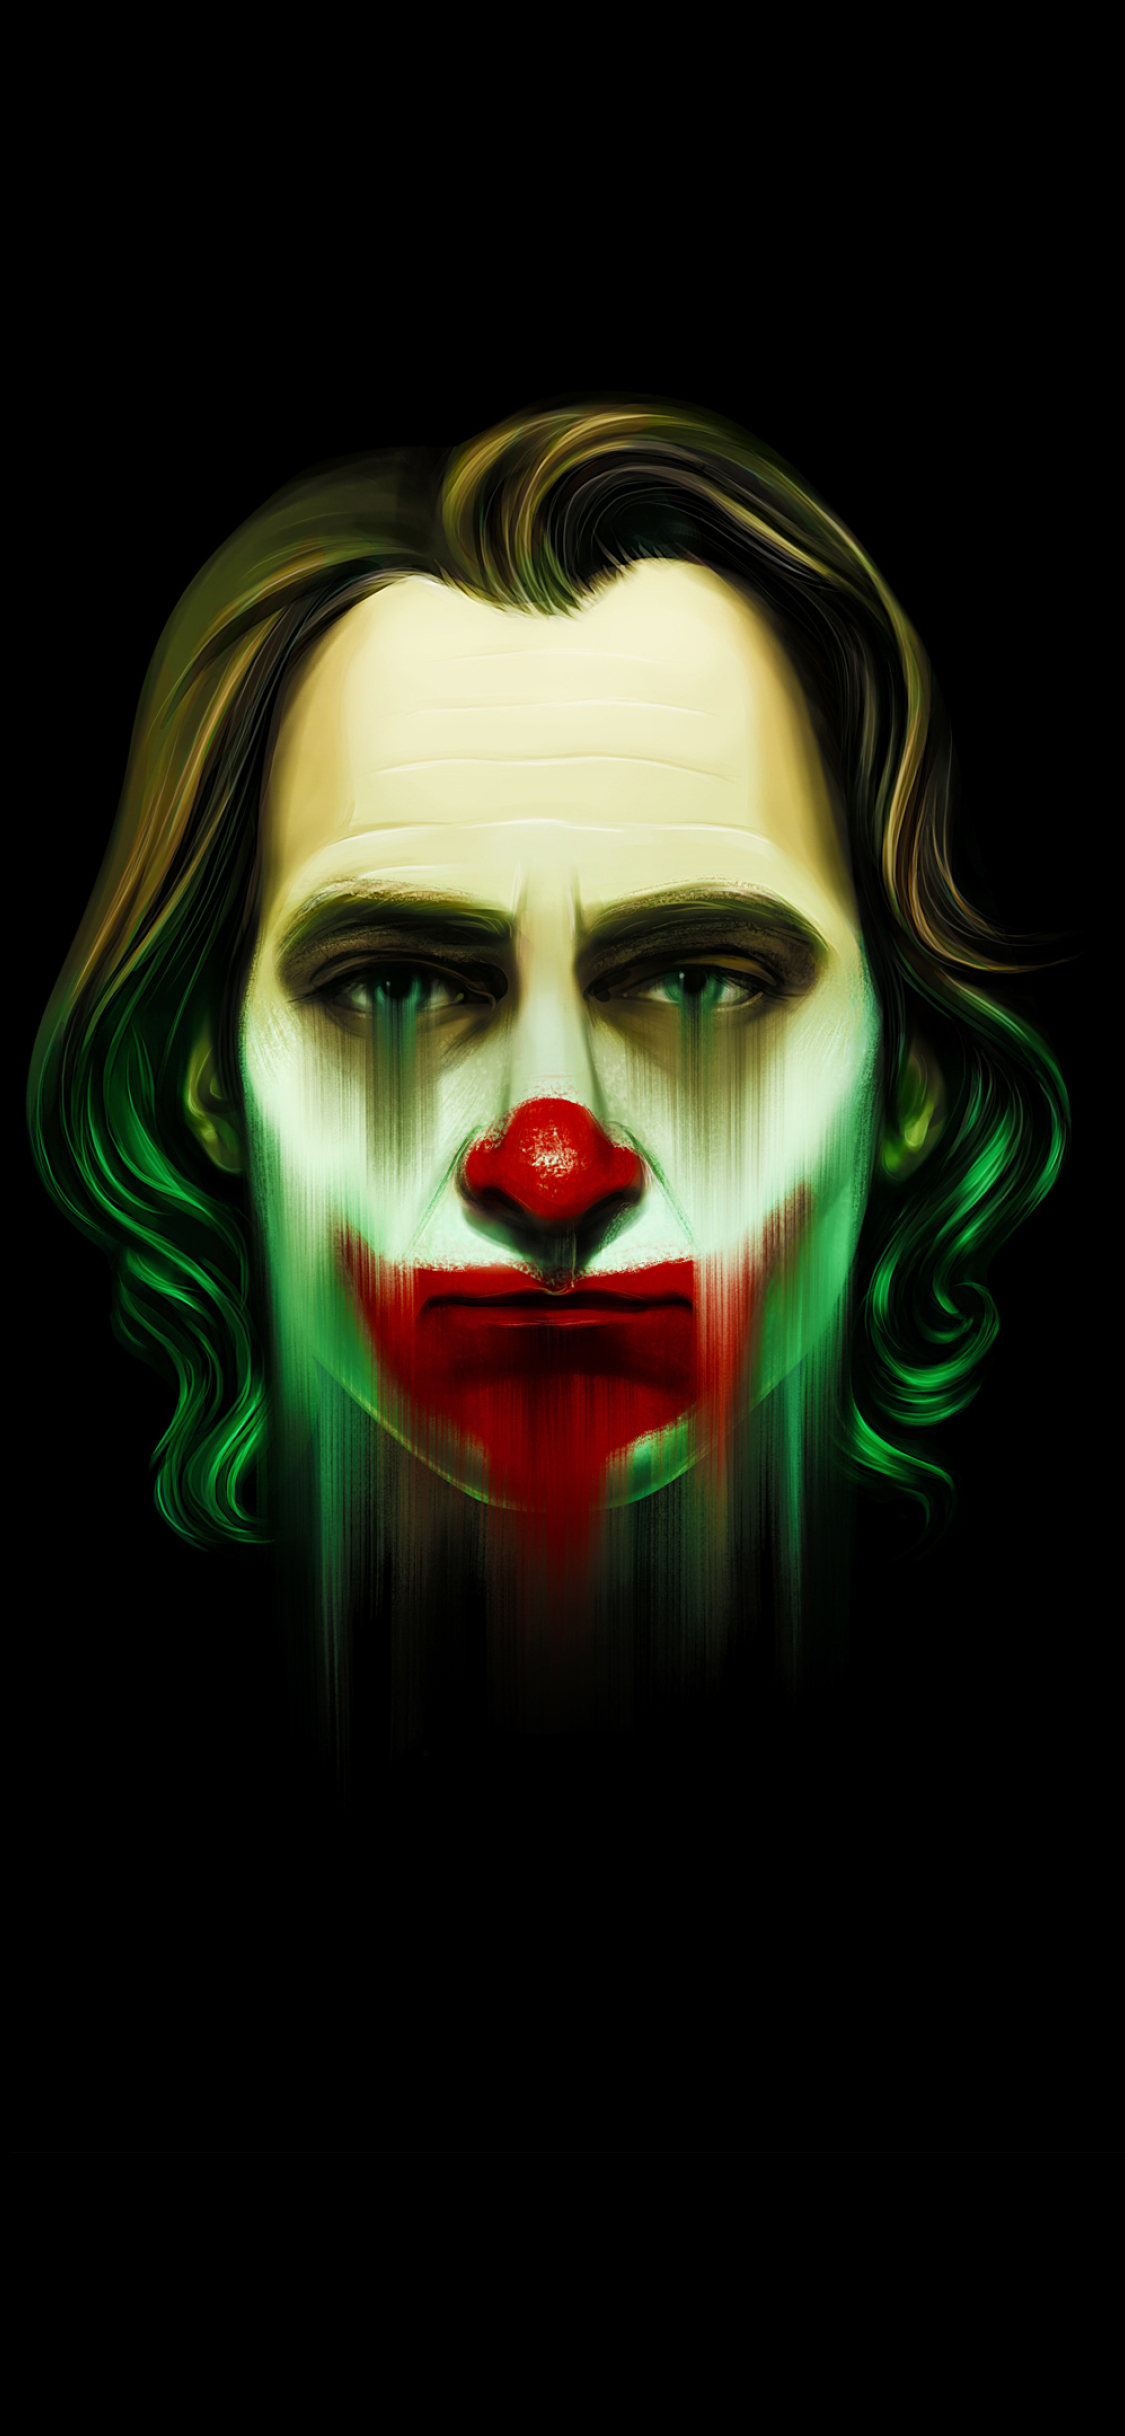 Iphone X Wallpaper Hd Joker